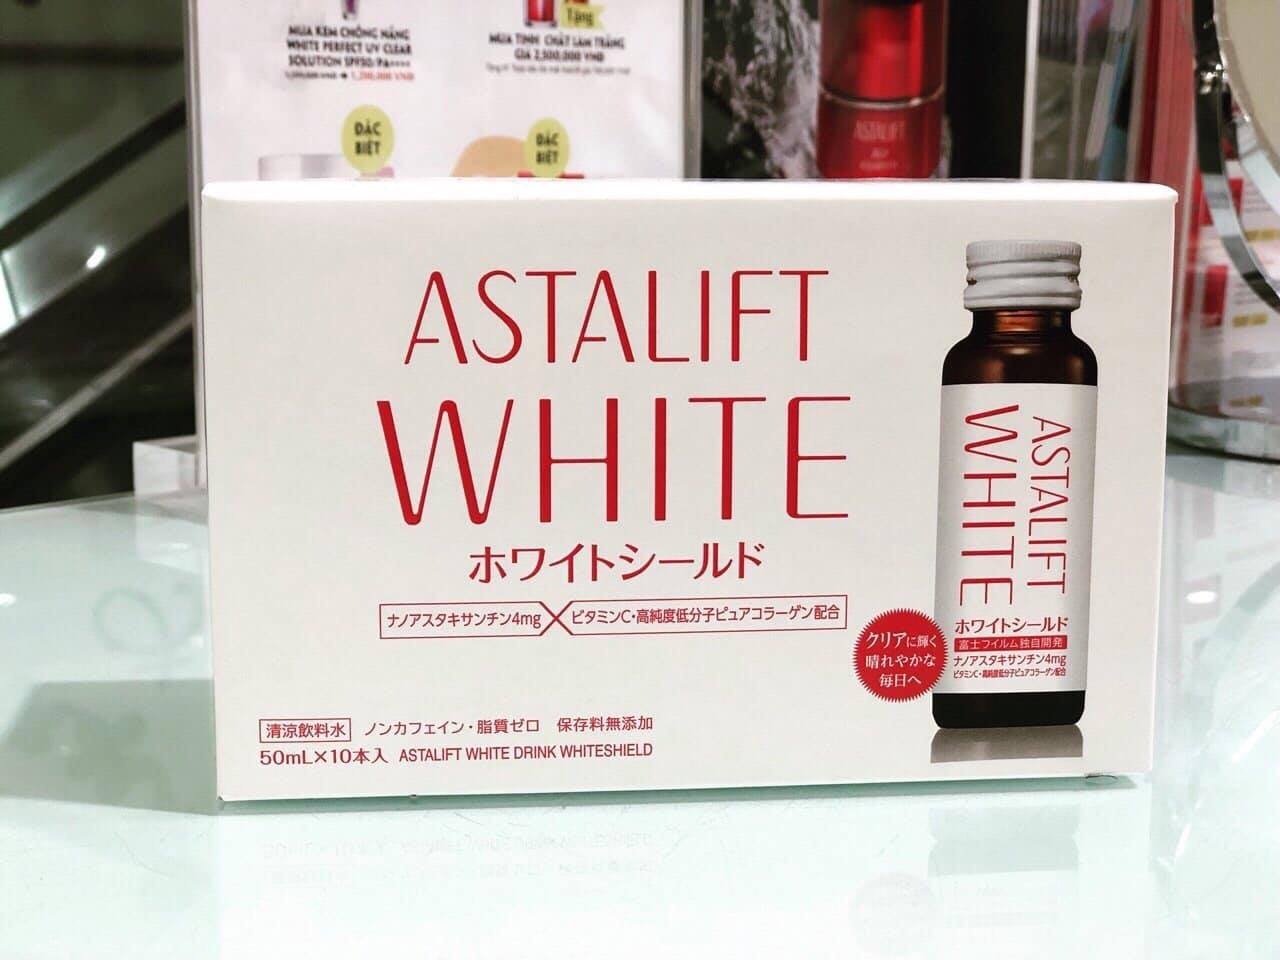 Astalift White có hàng giả không? Phân biệt như thế nào?